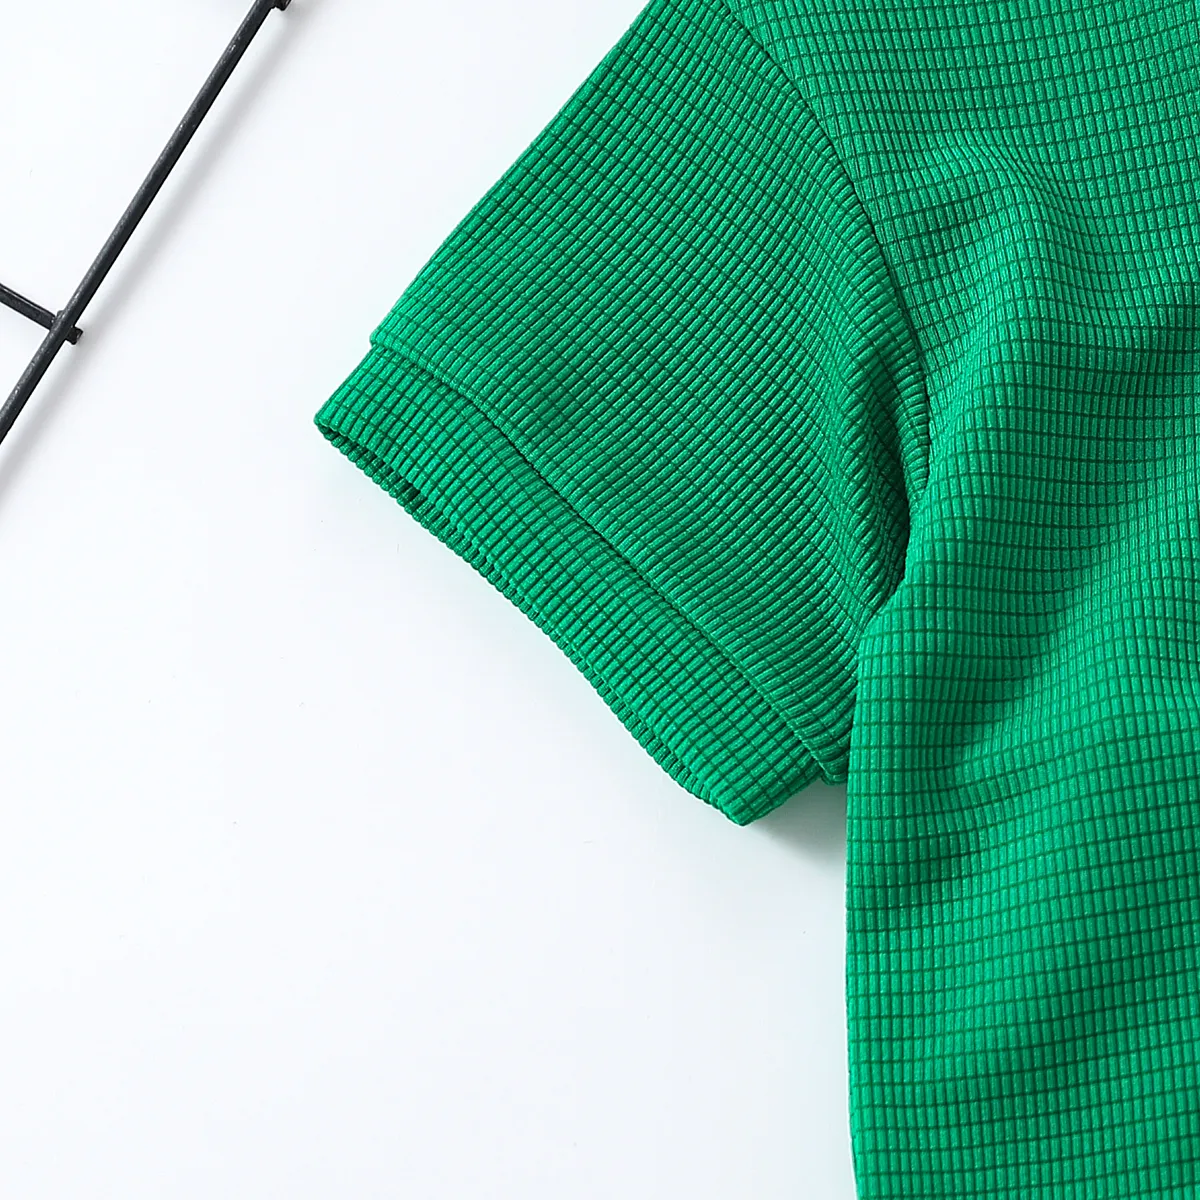 2 Stück Kleinkinder Jungen Basics T-Shirt-Sets grün big image 1